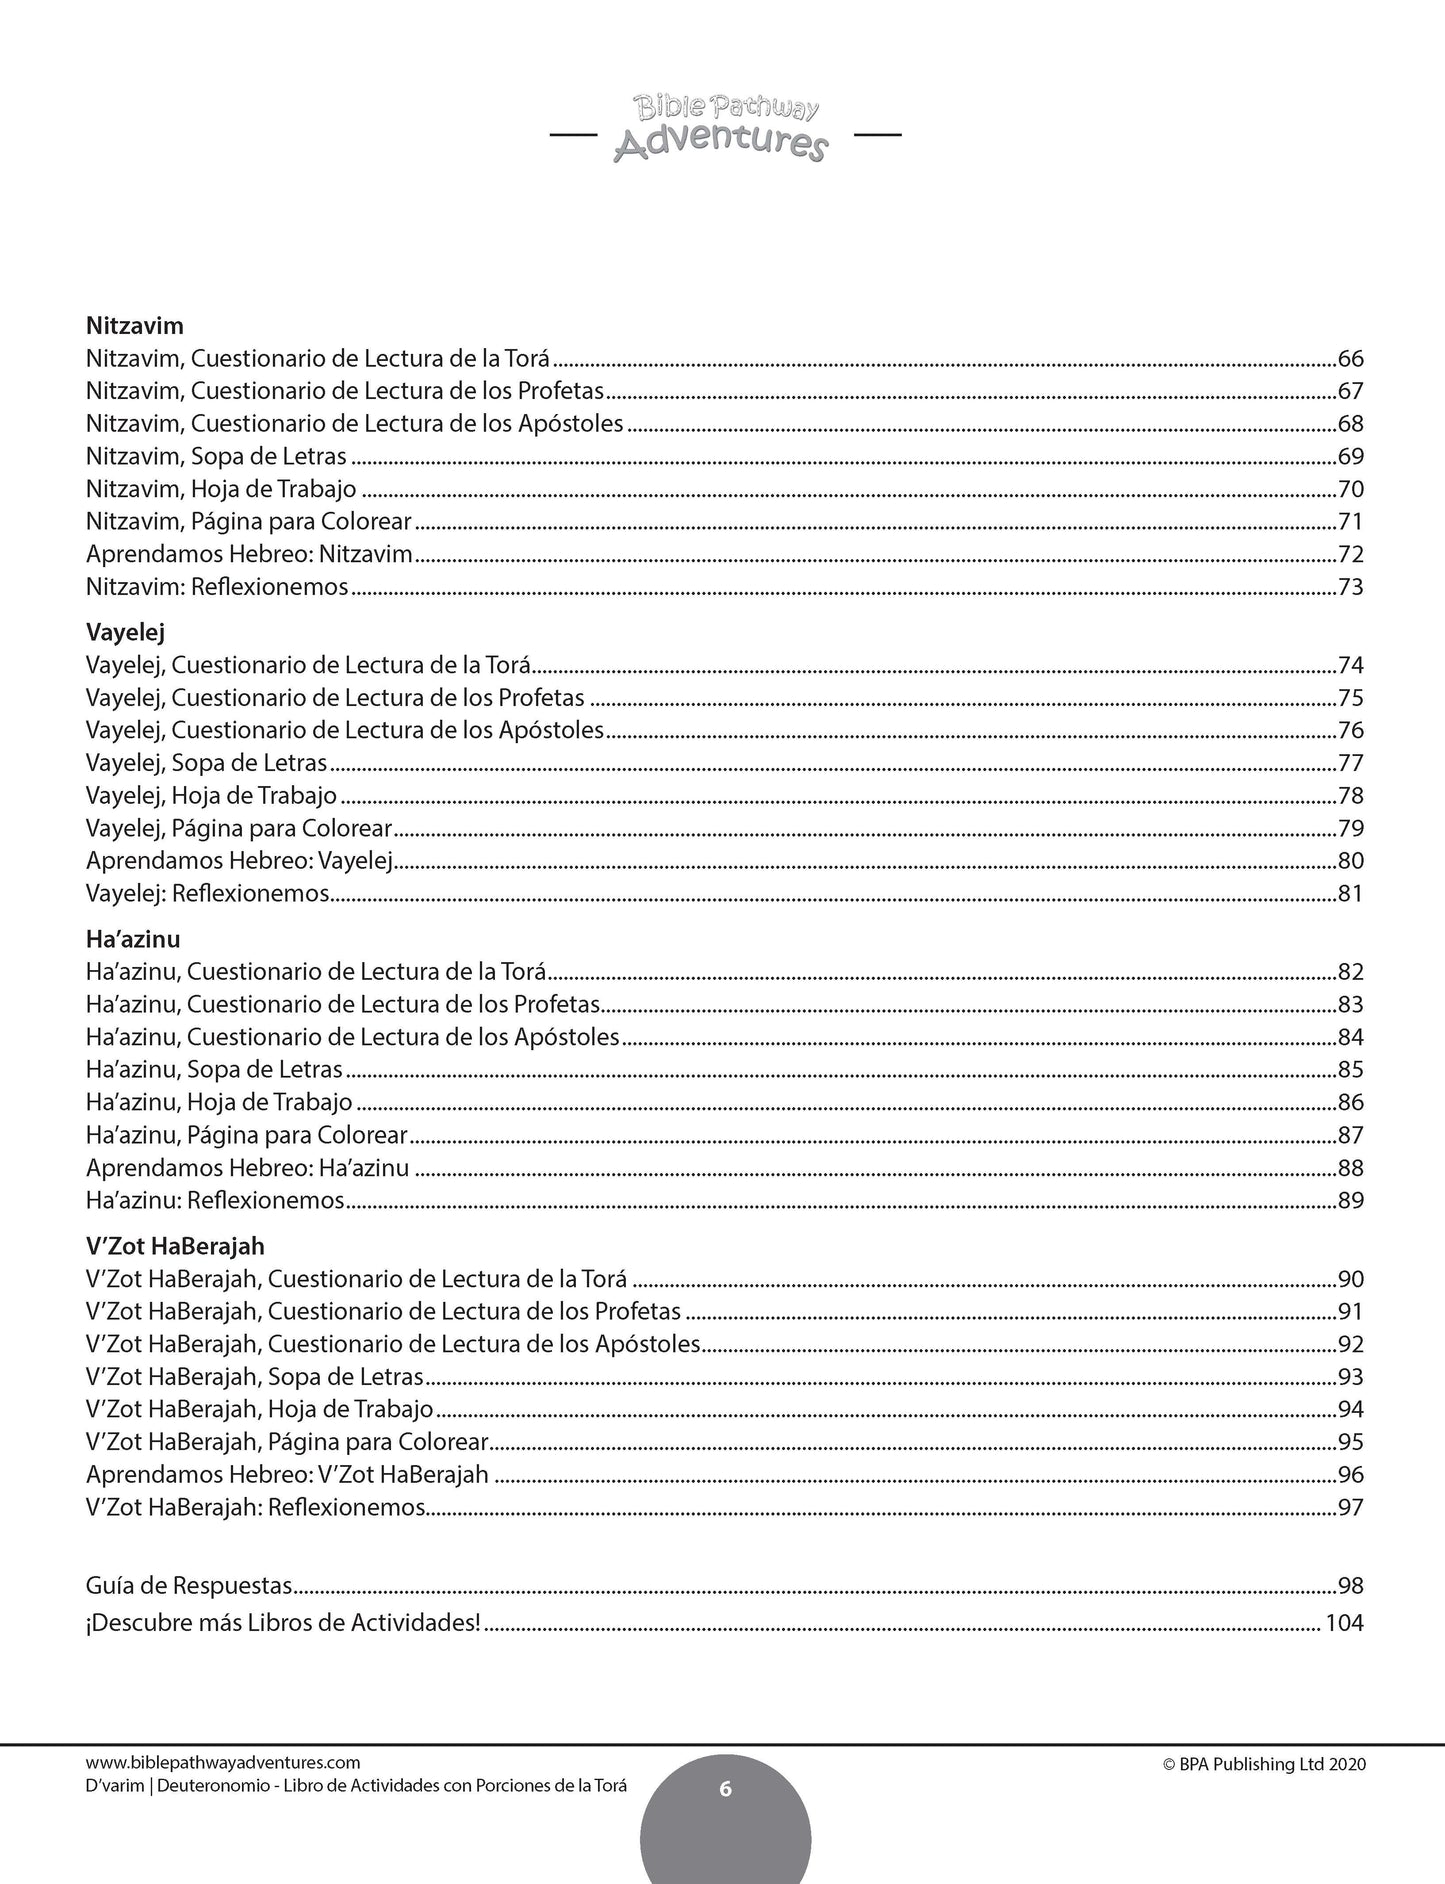 D’varim / Deuteronomio: Libro de actividades con porciones de la Torá (paperback)